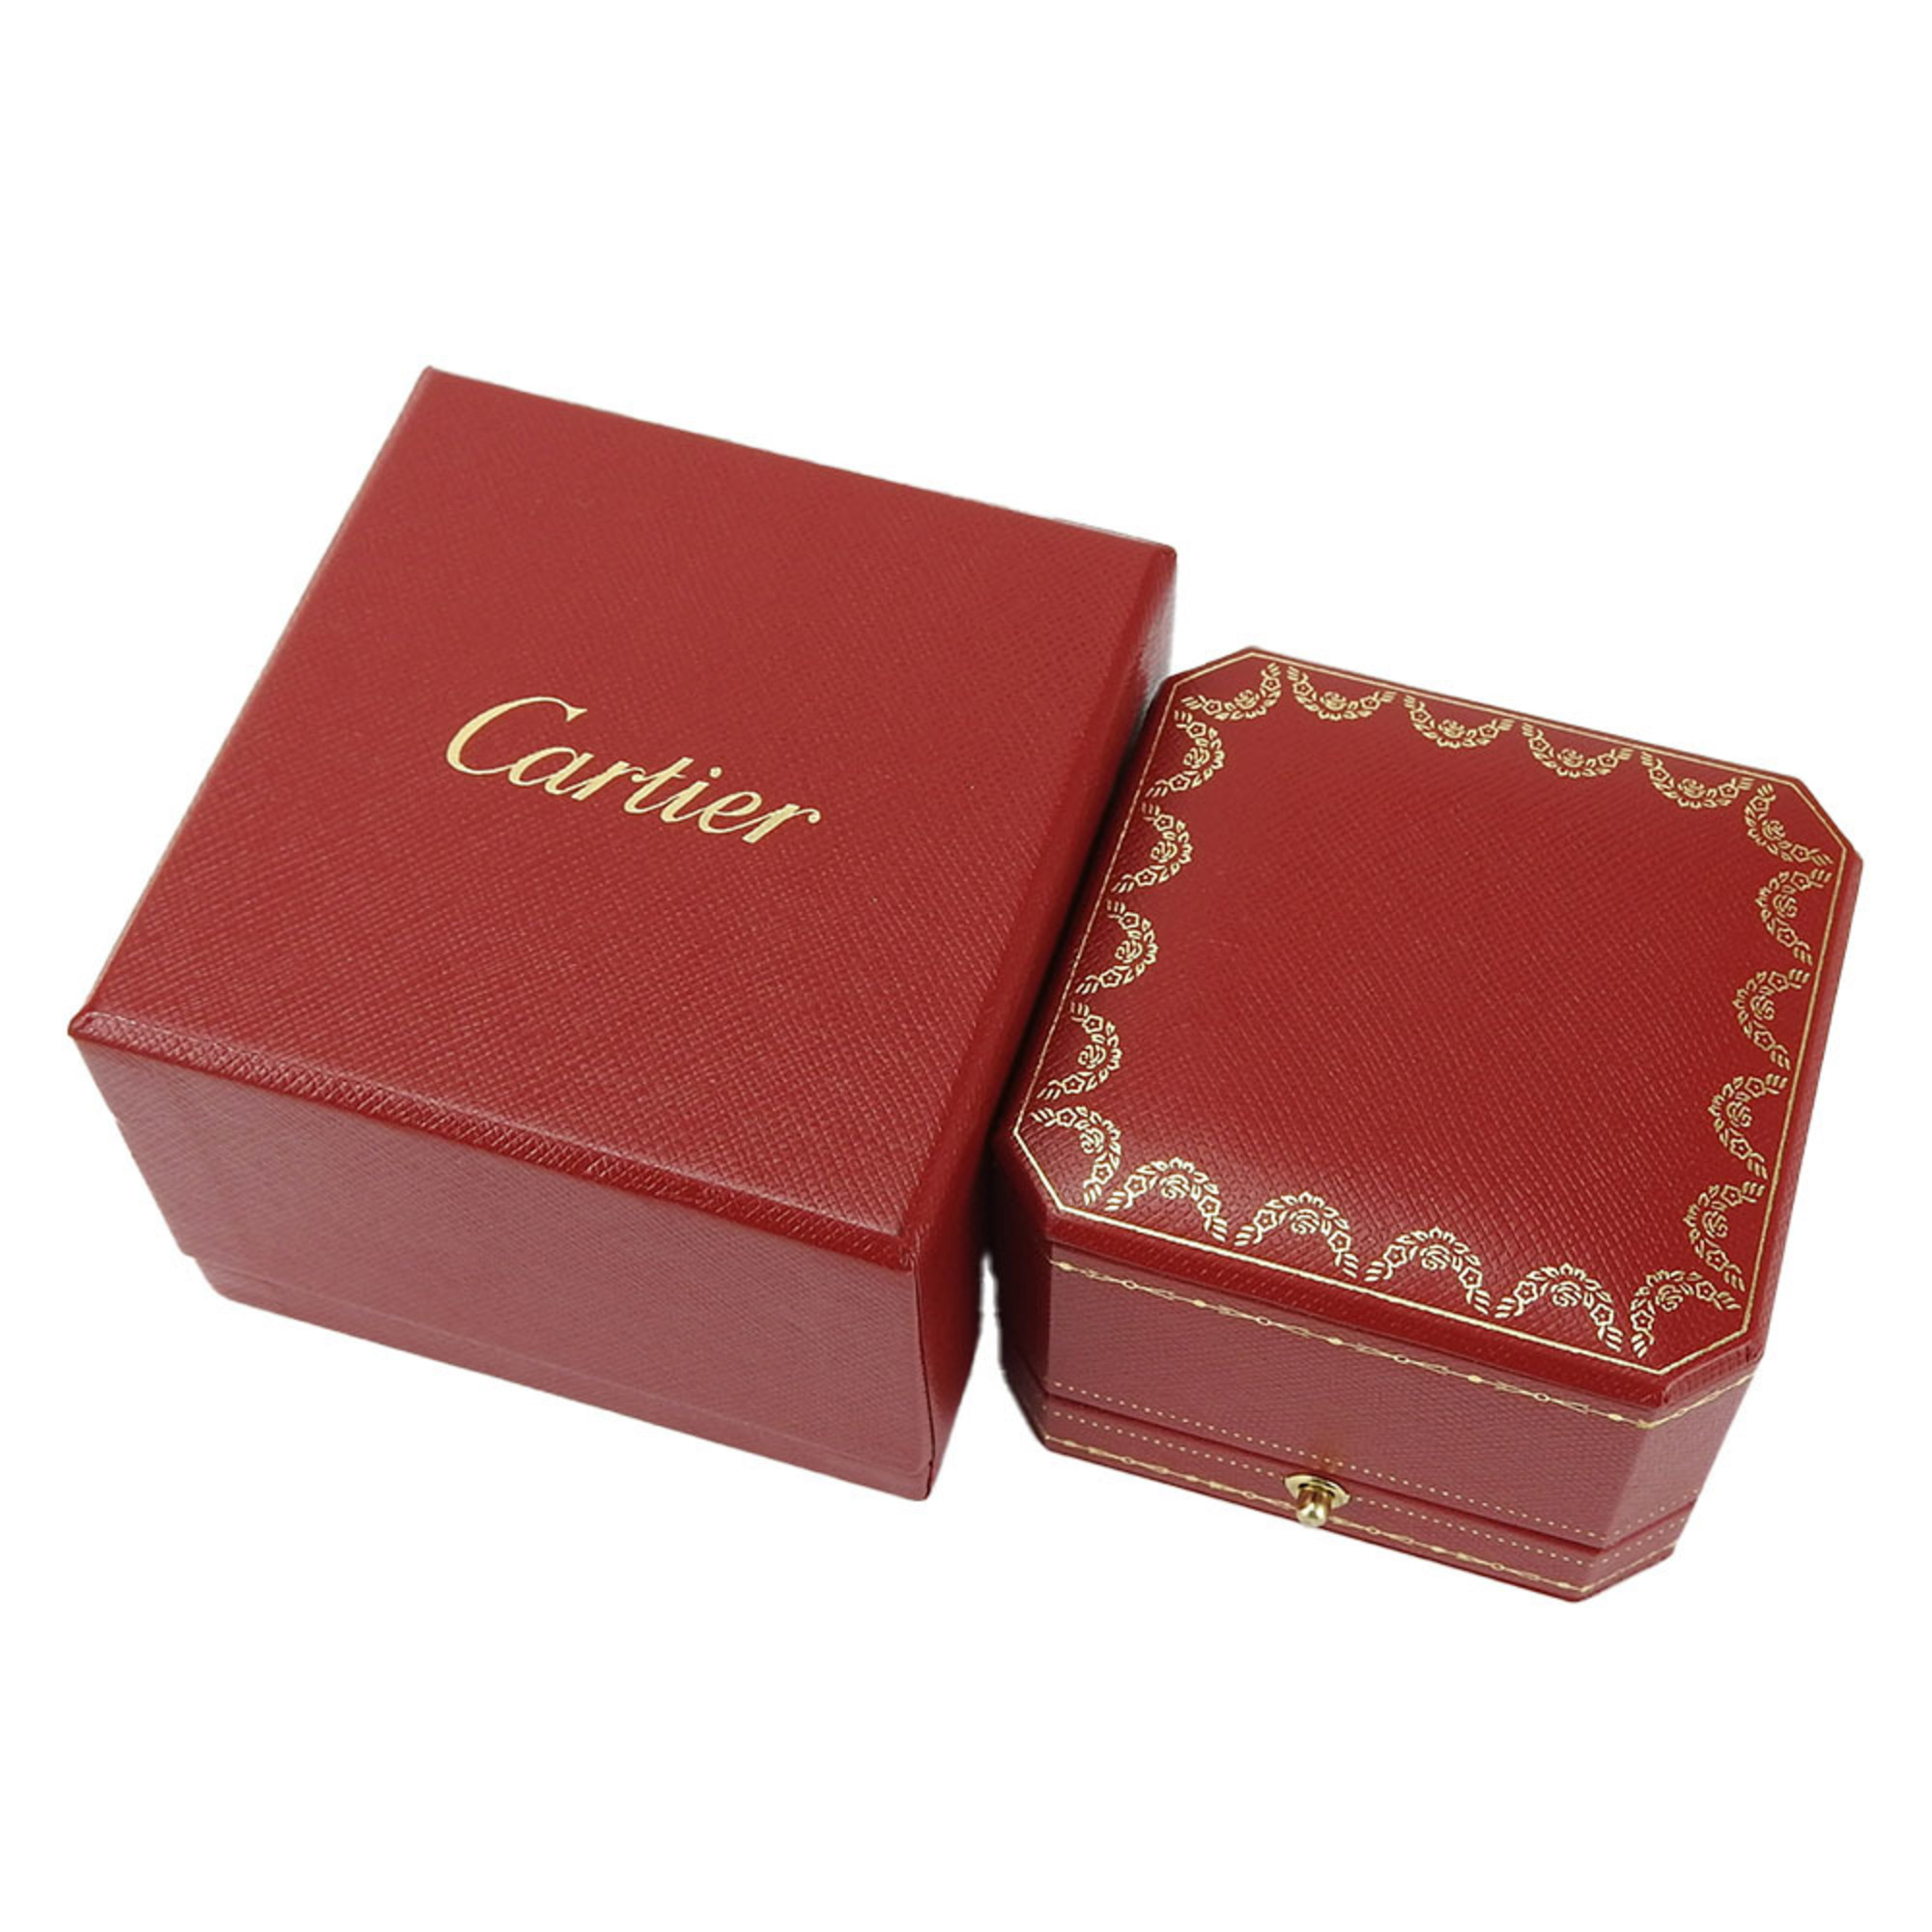 Cartier Ring Tank Francaise 47 K18PG approx. 8.0g Pink Gold Women's CARTIER